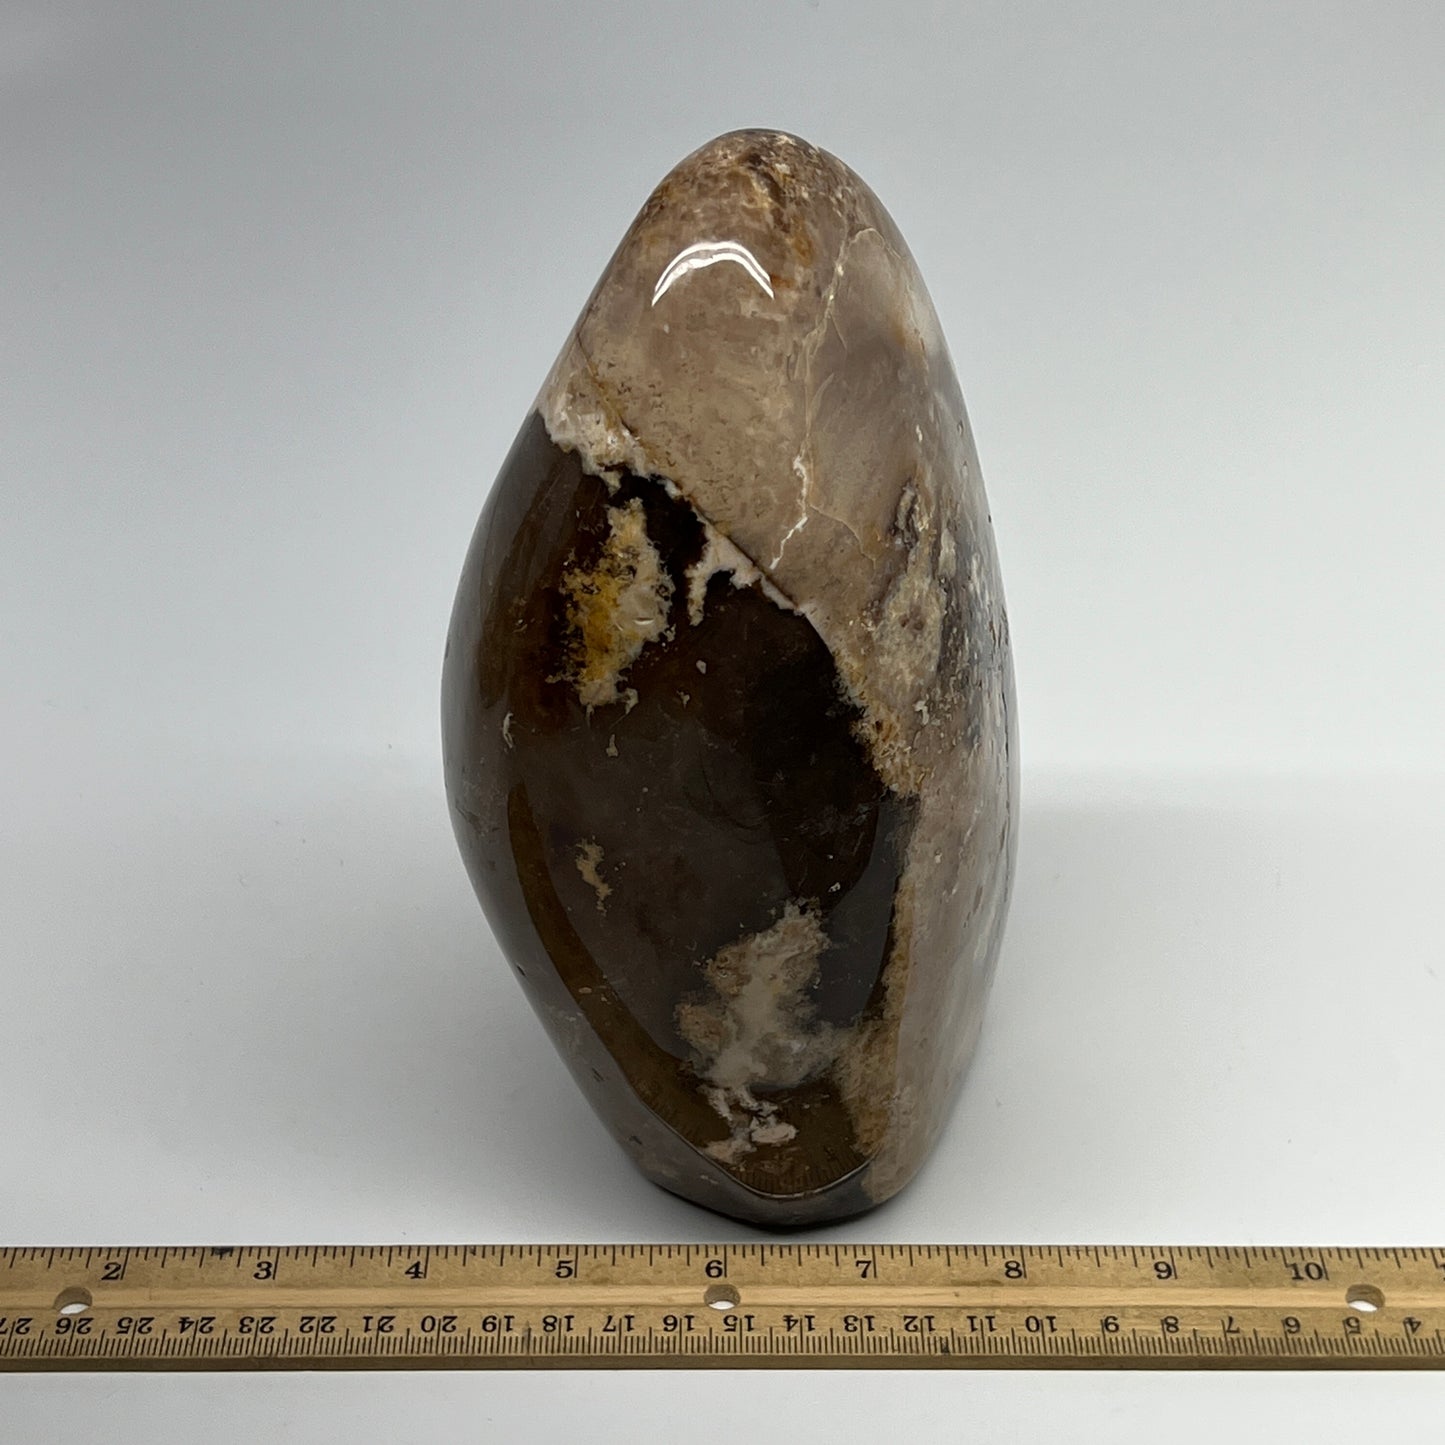 2915g,7.5"x4.7"x3.7" Black Opal Freeform Polished Gemstone @Madagascar,B21110